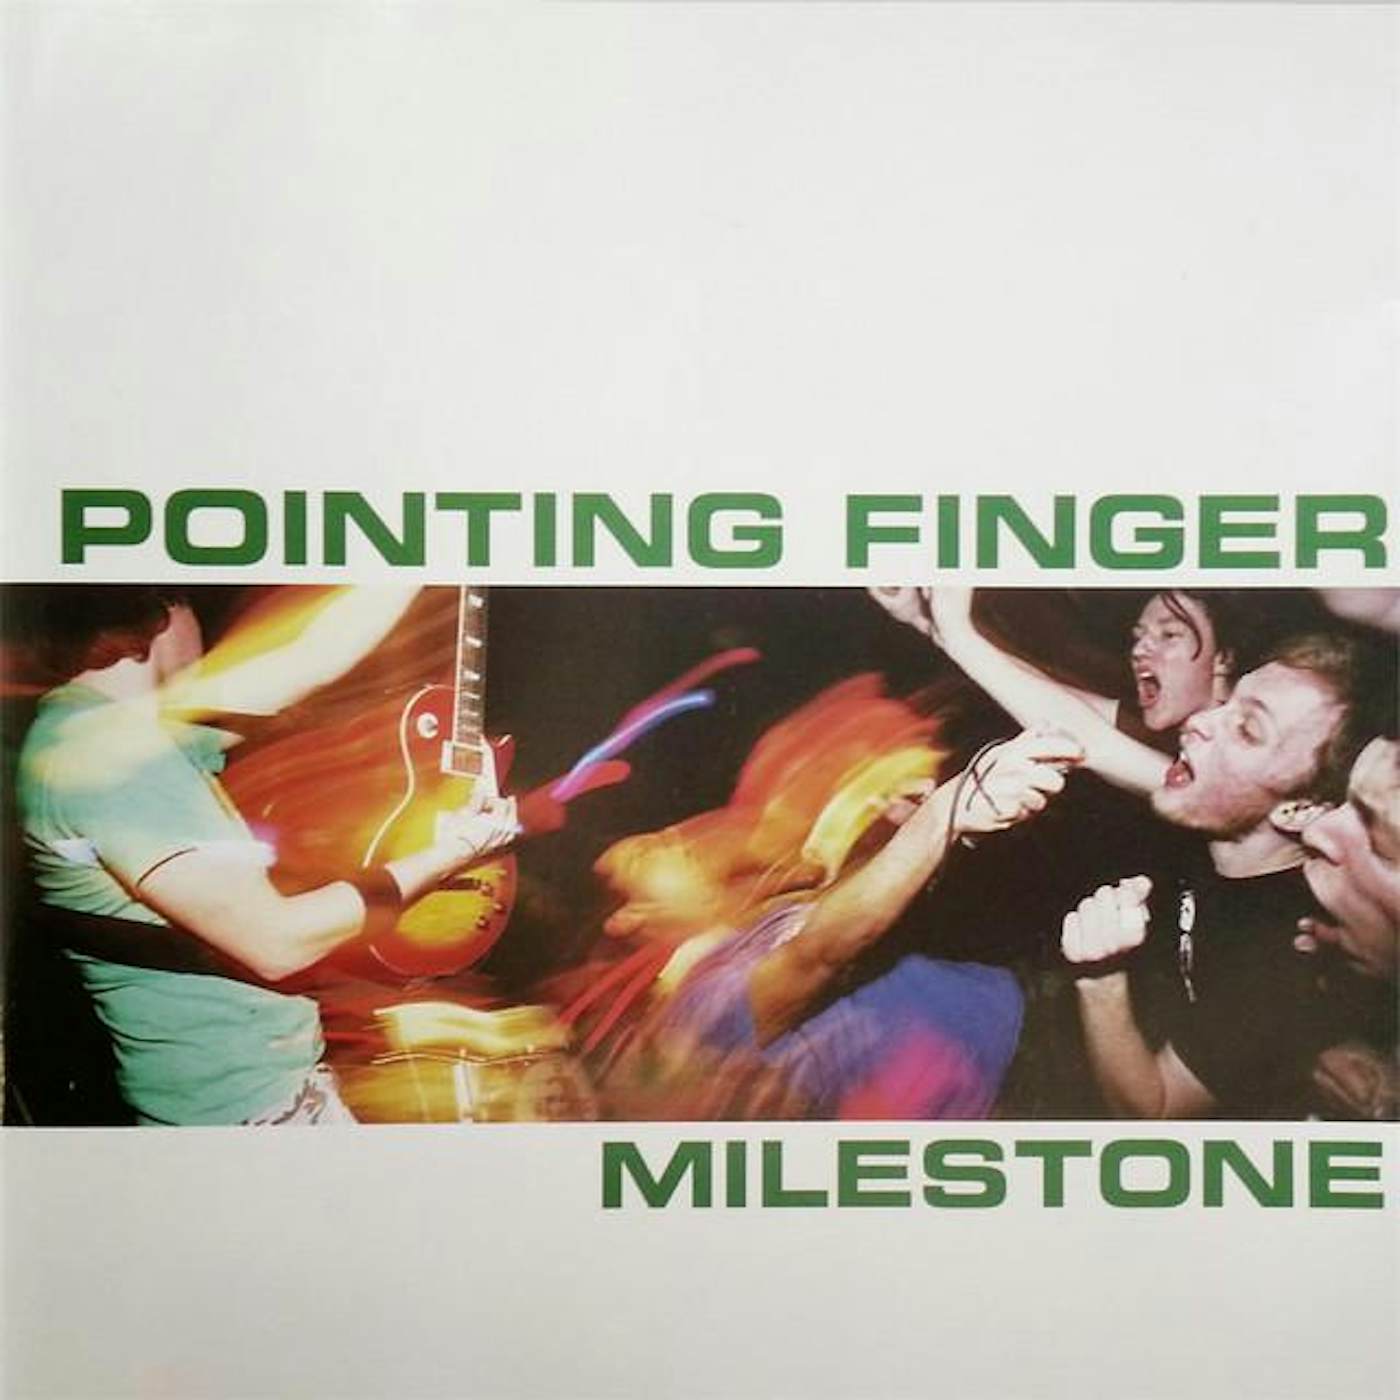 Pointing Finger